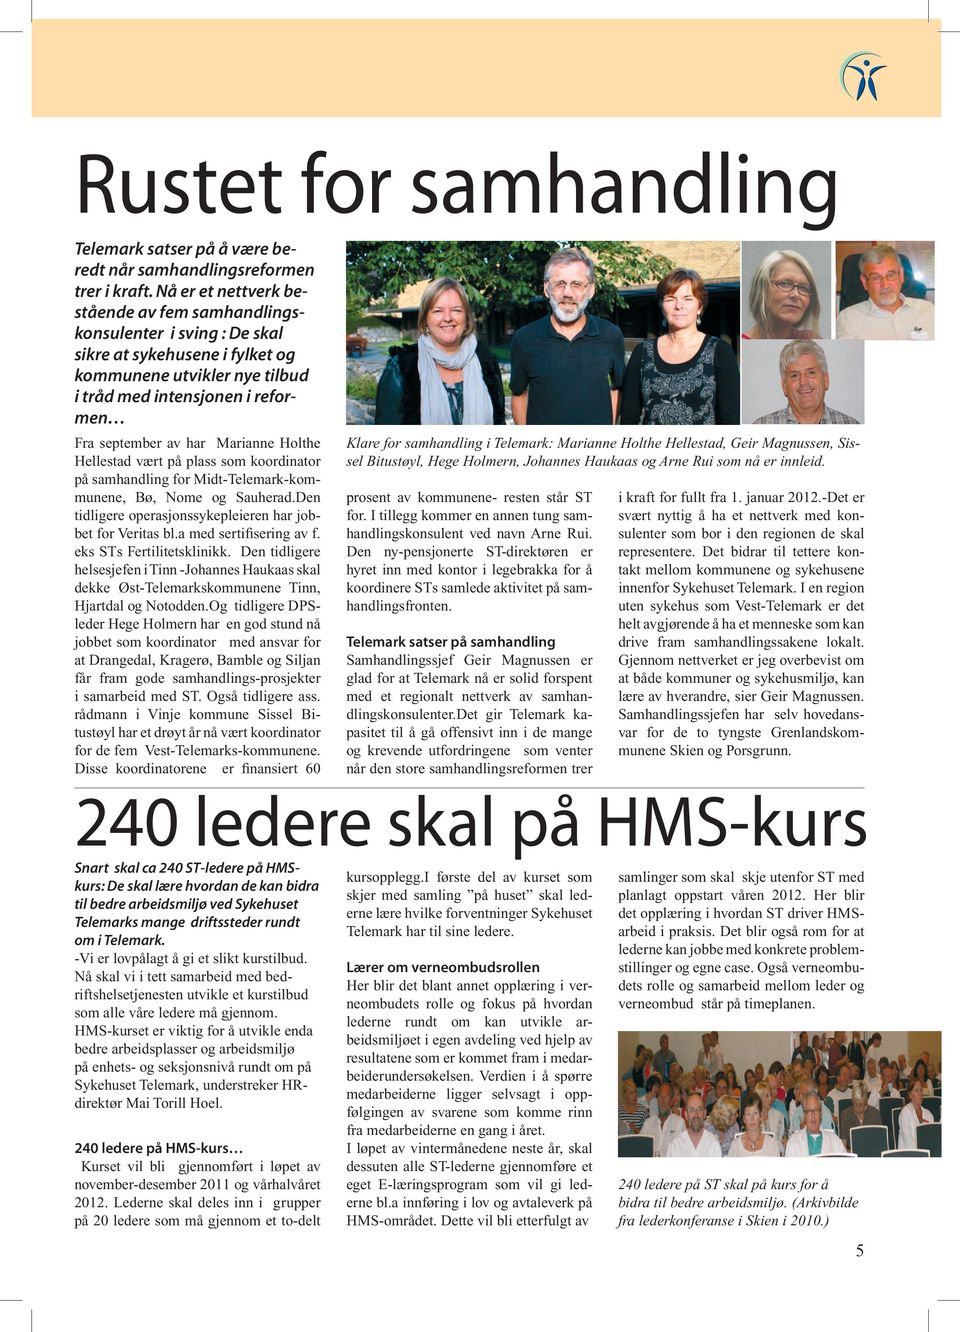 Marianne Holthe Hellestad vært på plass som koordinator på samhandling for Midt-Telemark-kommunene, Bø, Nome og Sauherad.Den tidligere operasjonssykepleieren har jobbet for Veritas bl.